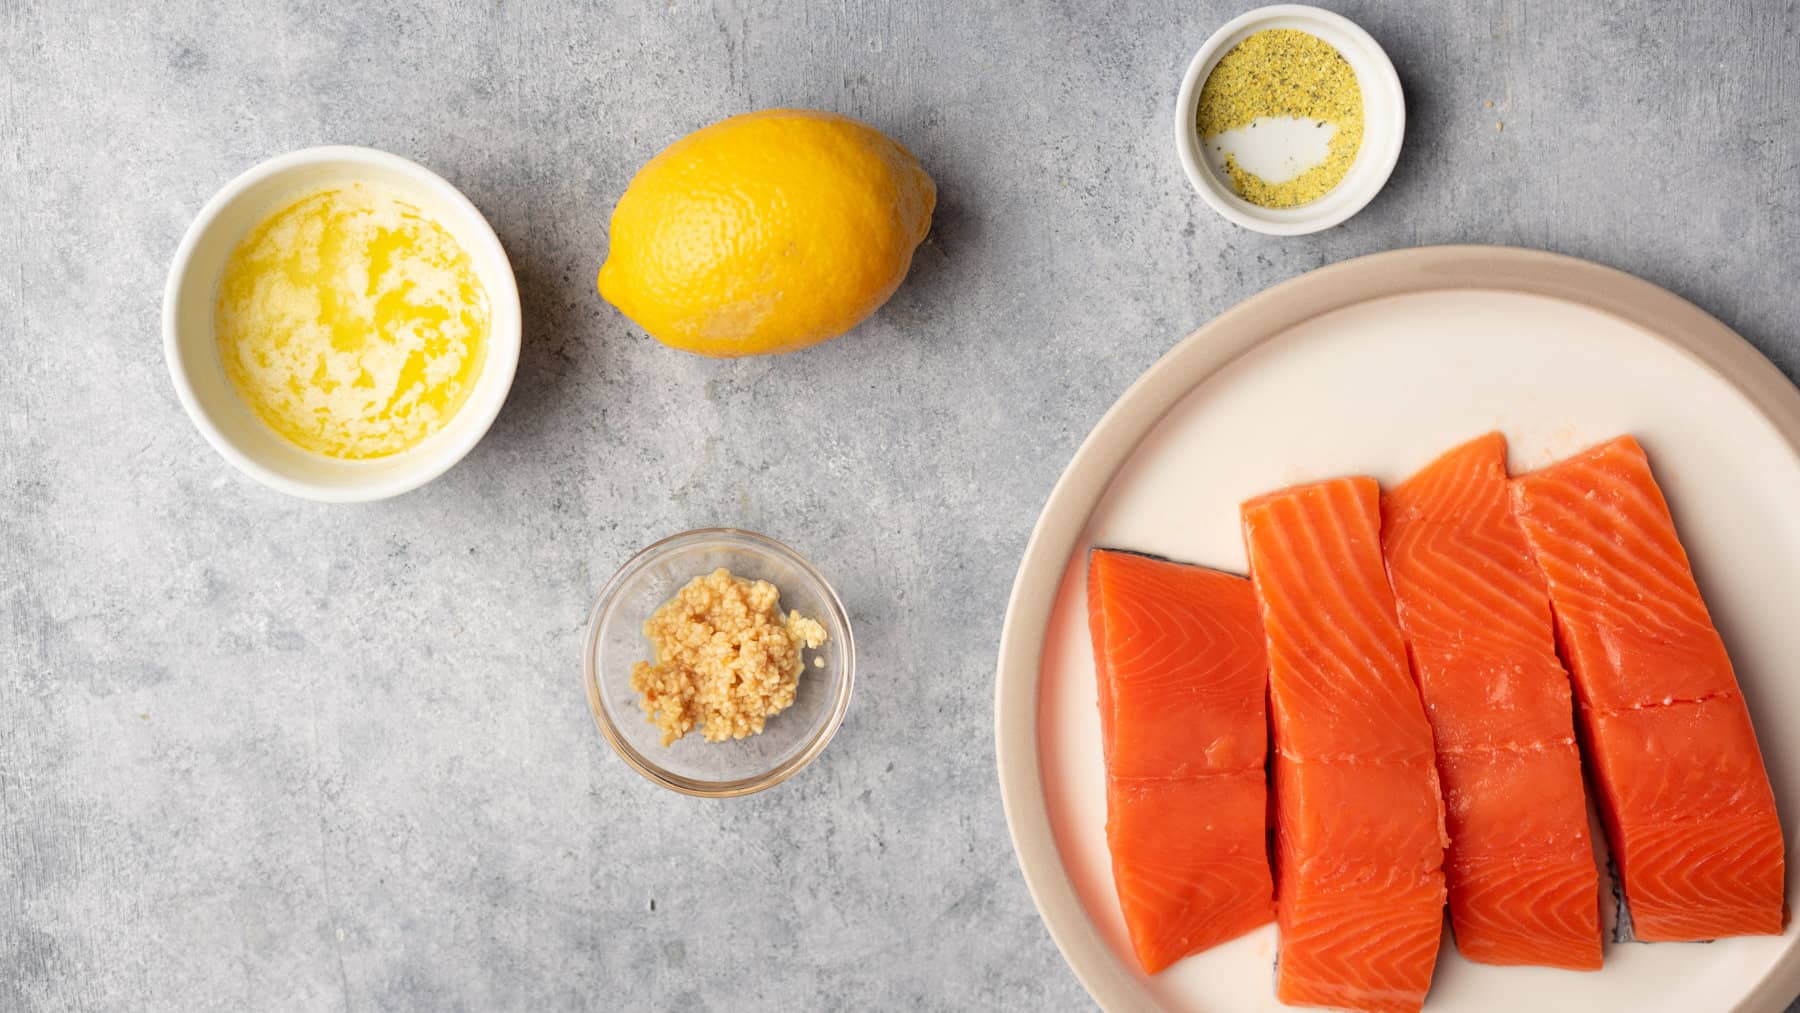 Ingredients to make lemon pepper salmon.